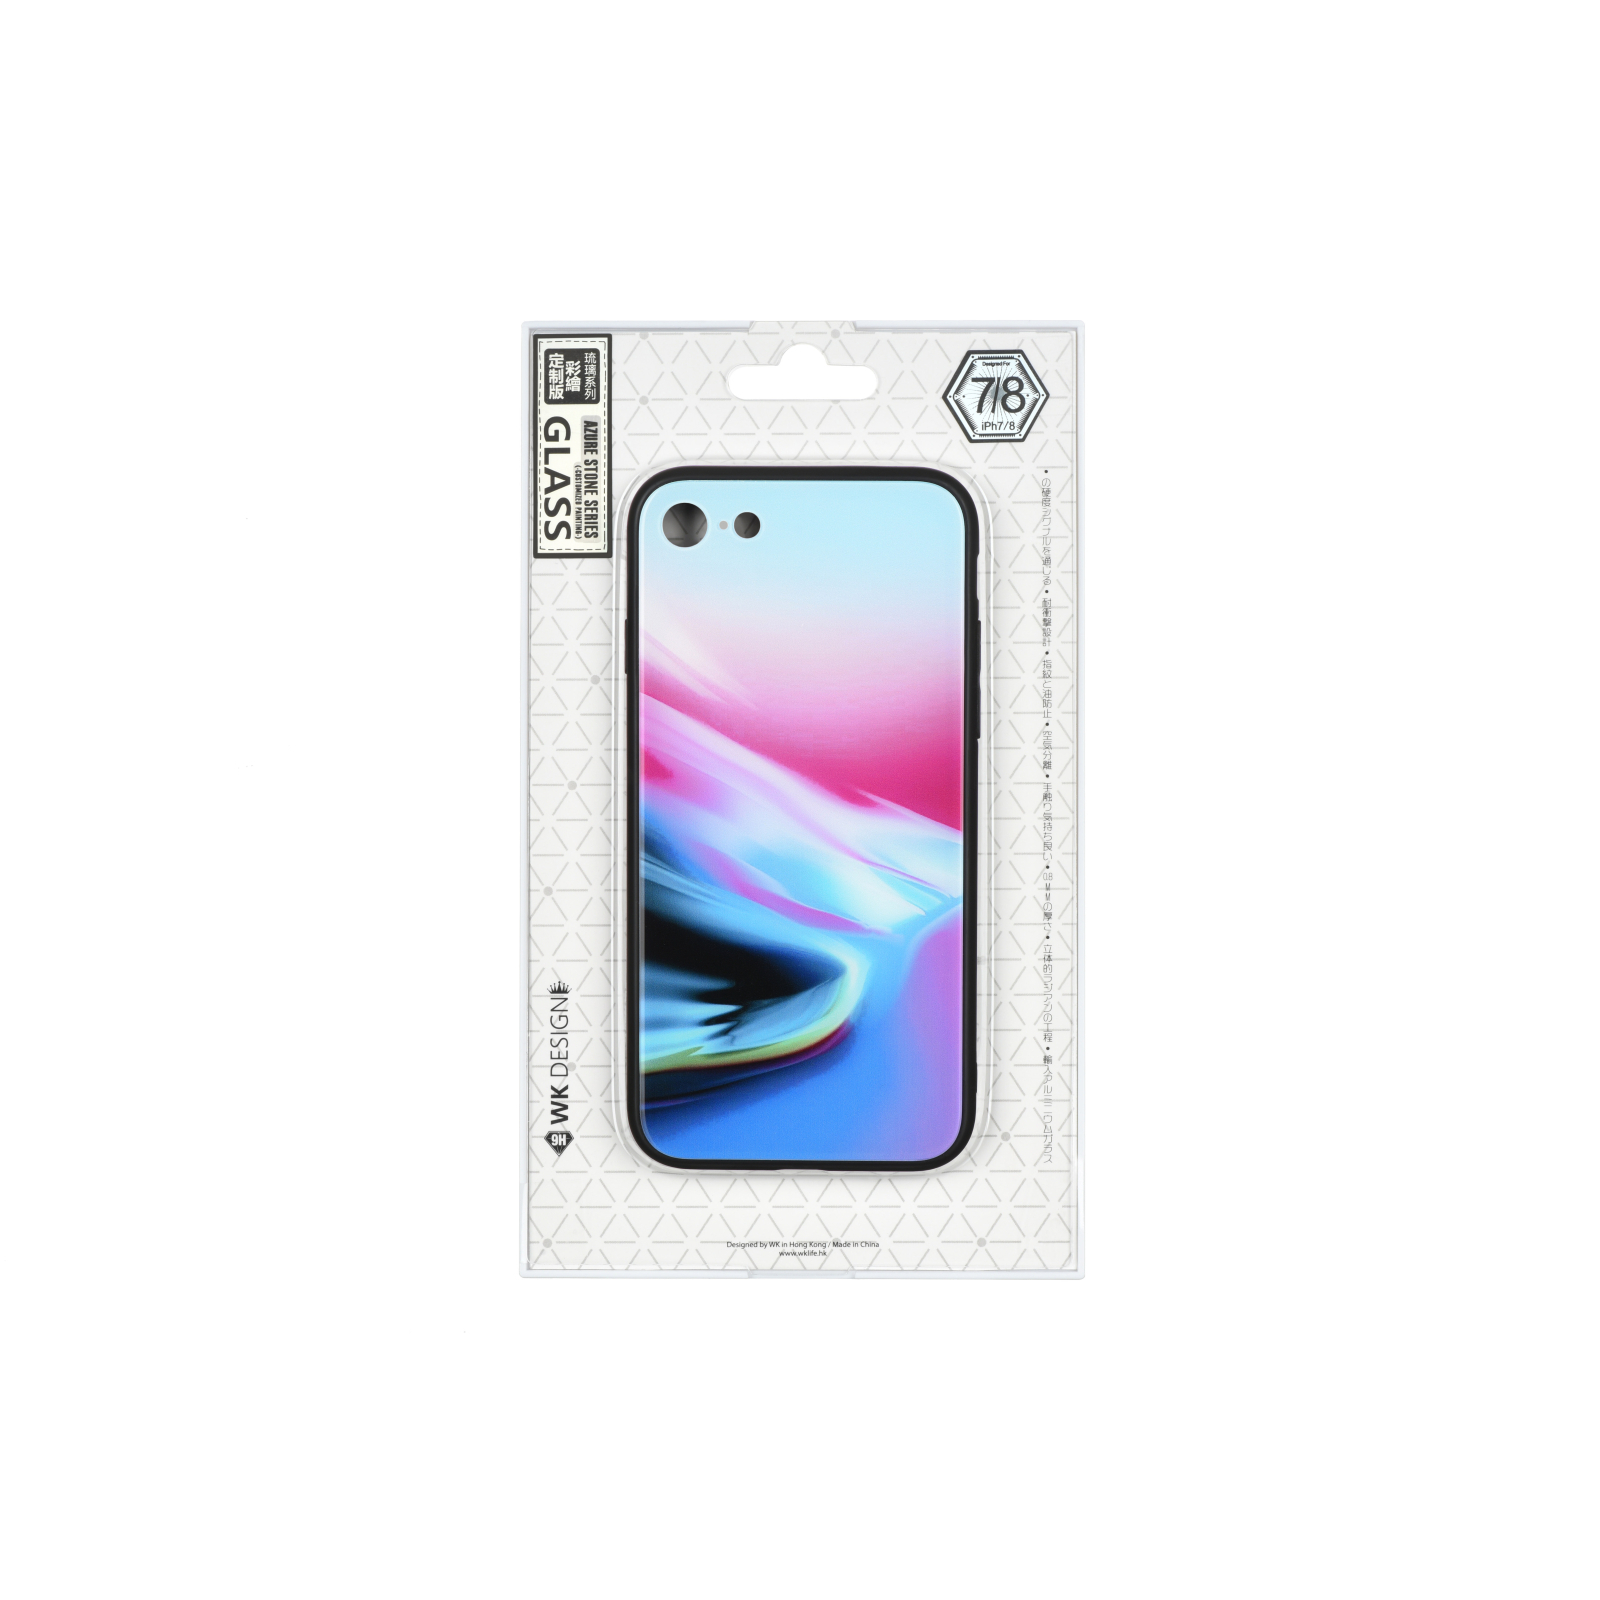 Чехол для мобильного телефона WK iPhone 7/8, WPC-061, Color Shine (681920360414) изображение 2